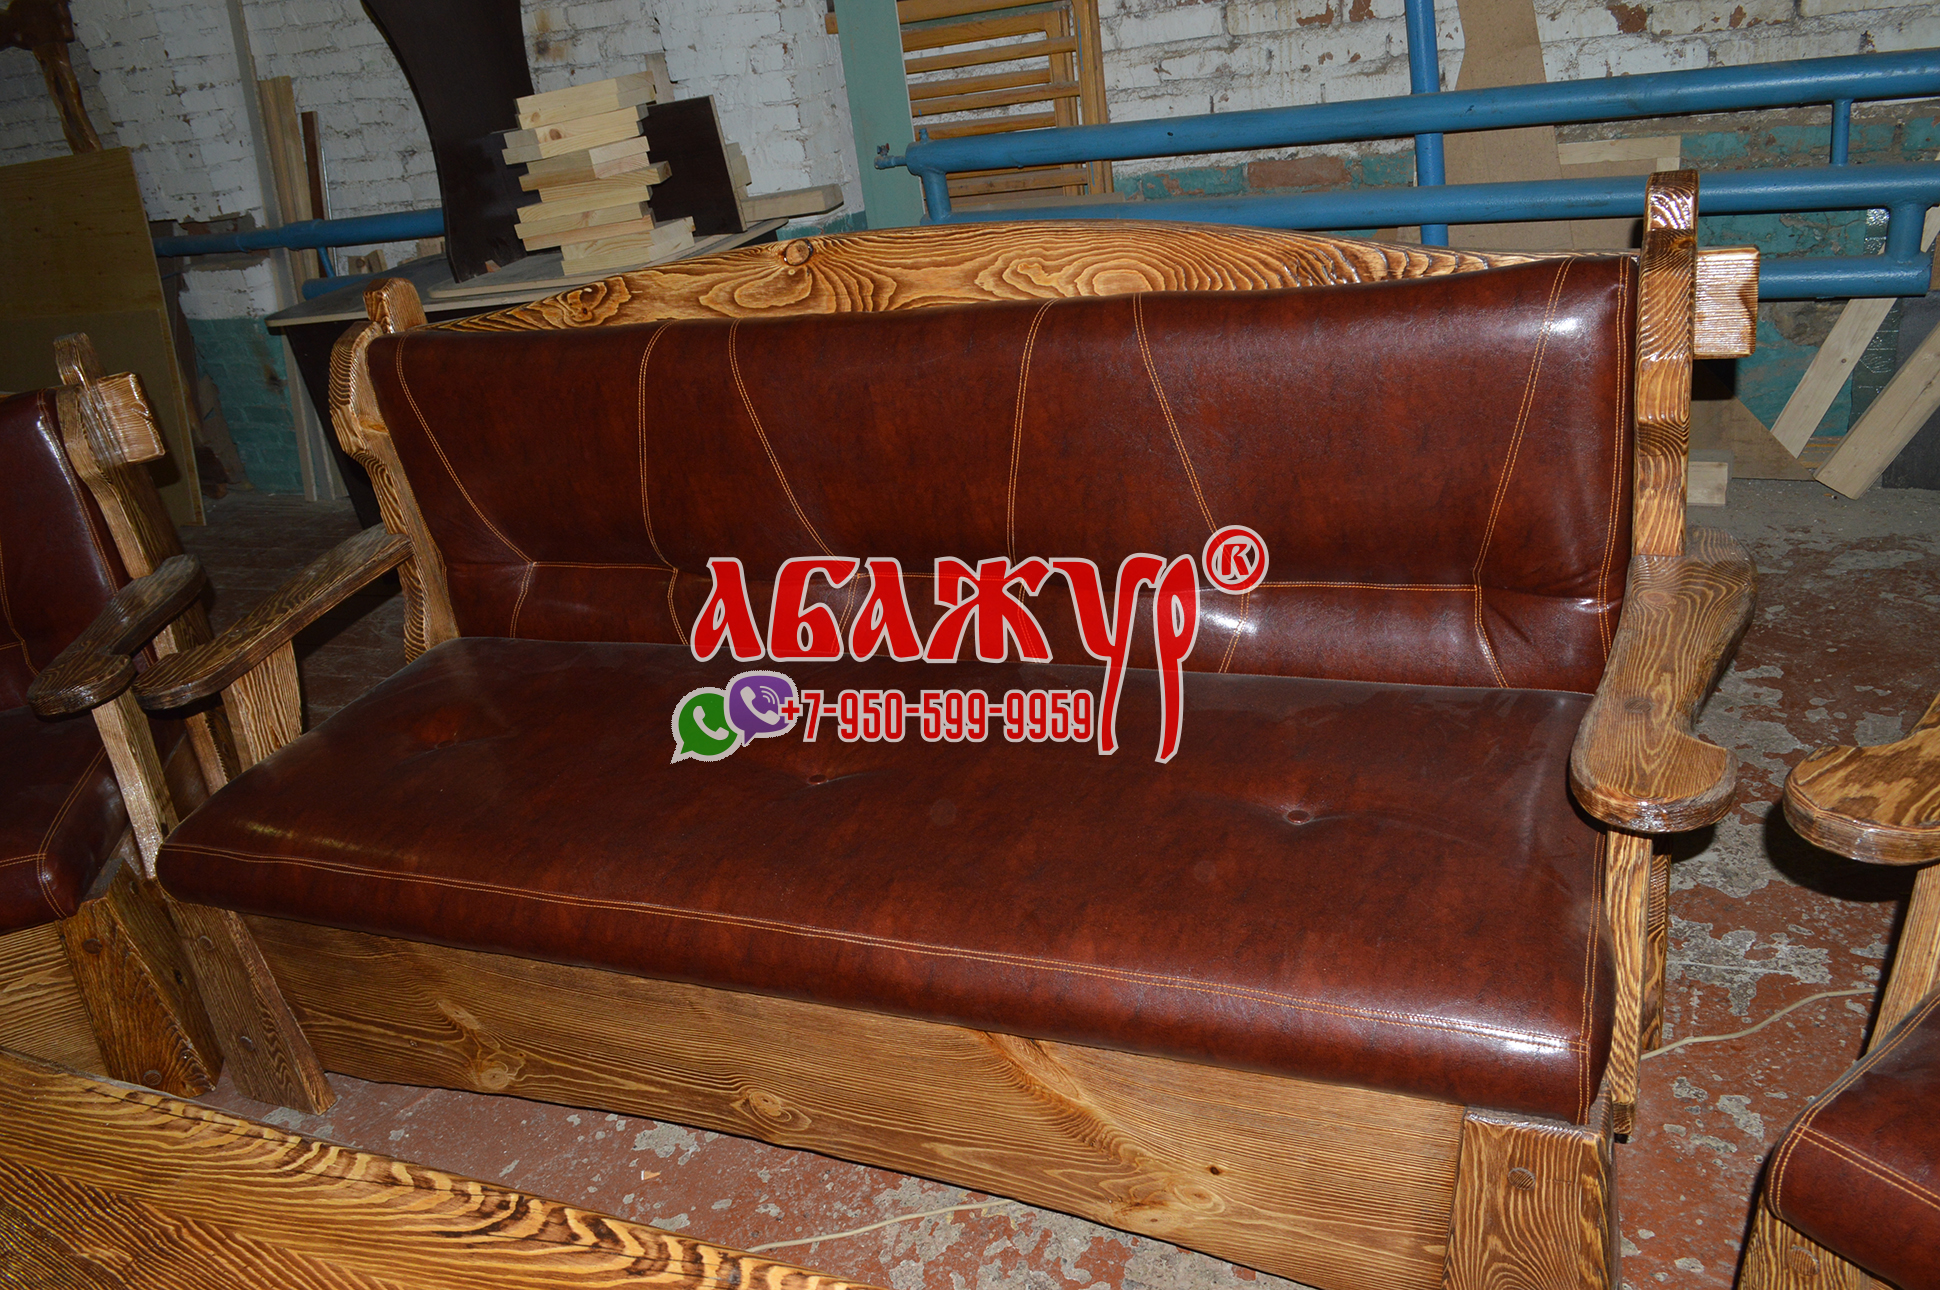 Диван и кресла с кожаным сиденьем красные под старину цена (7)